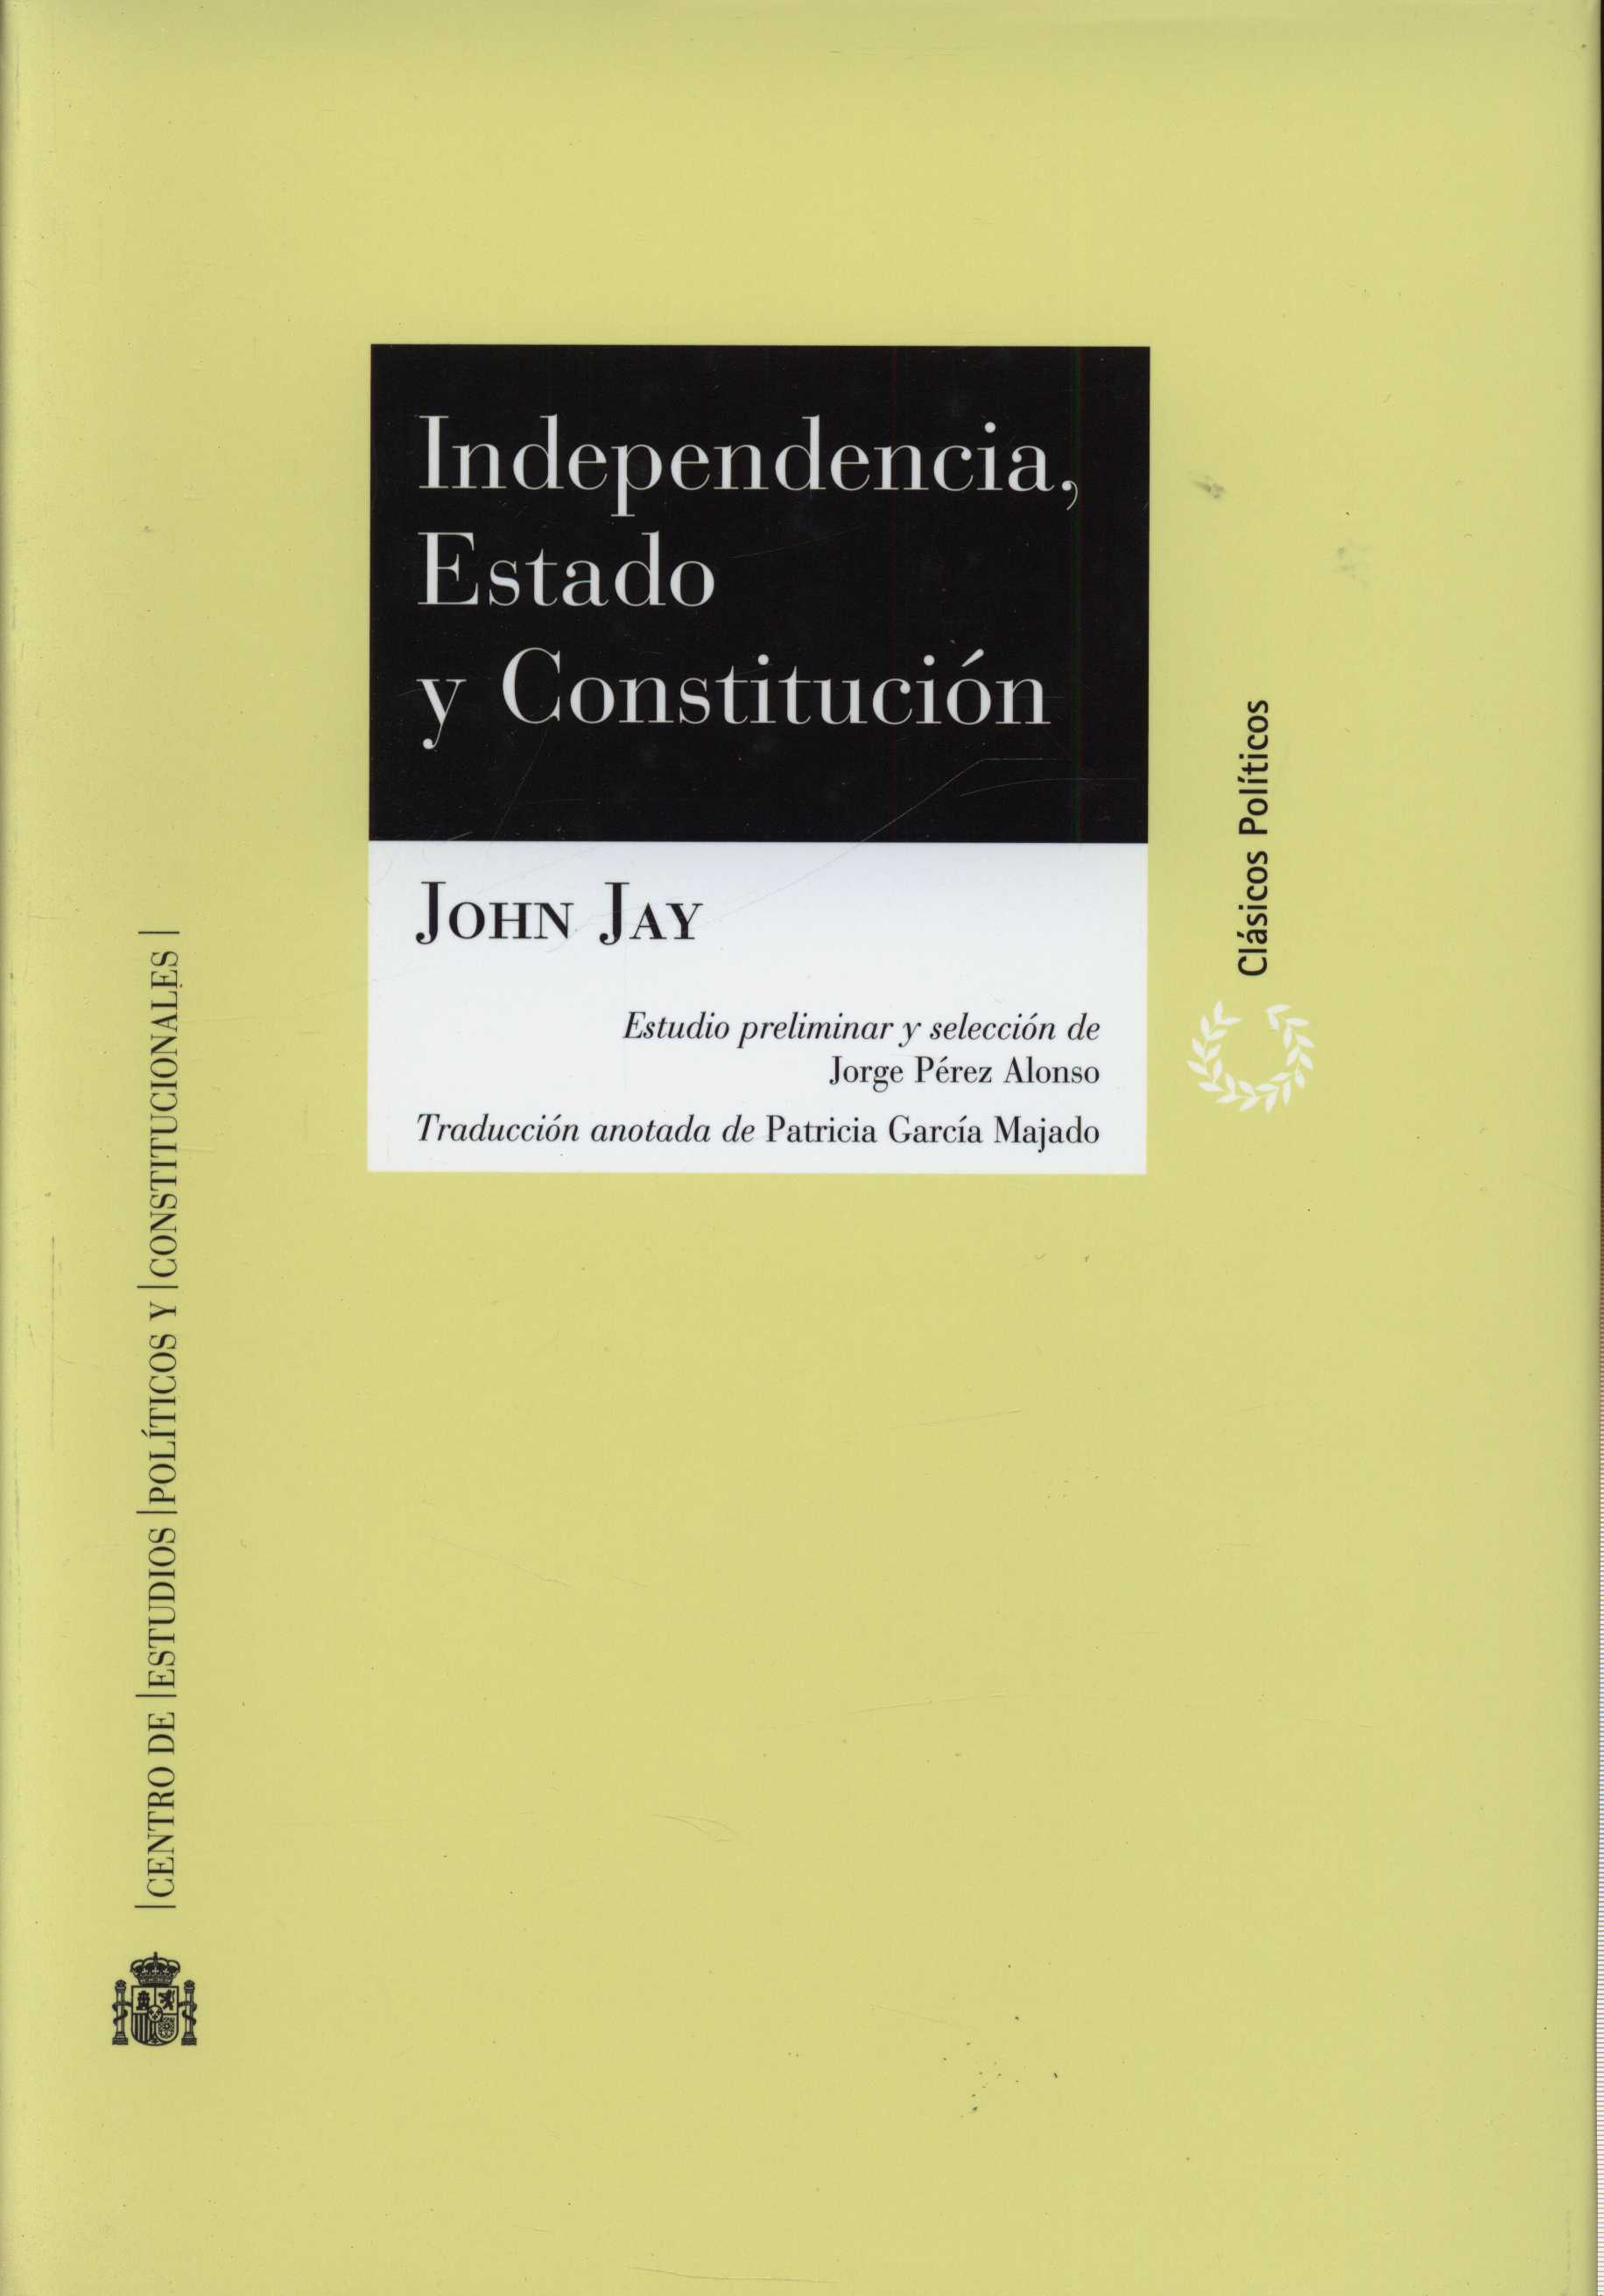 Imagen de portada del libro Independencia, estado y Constitución